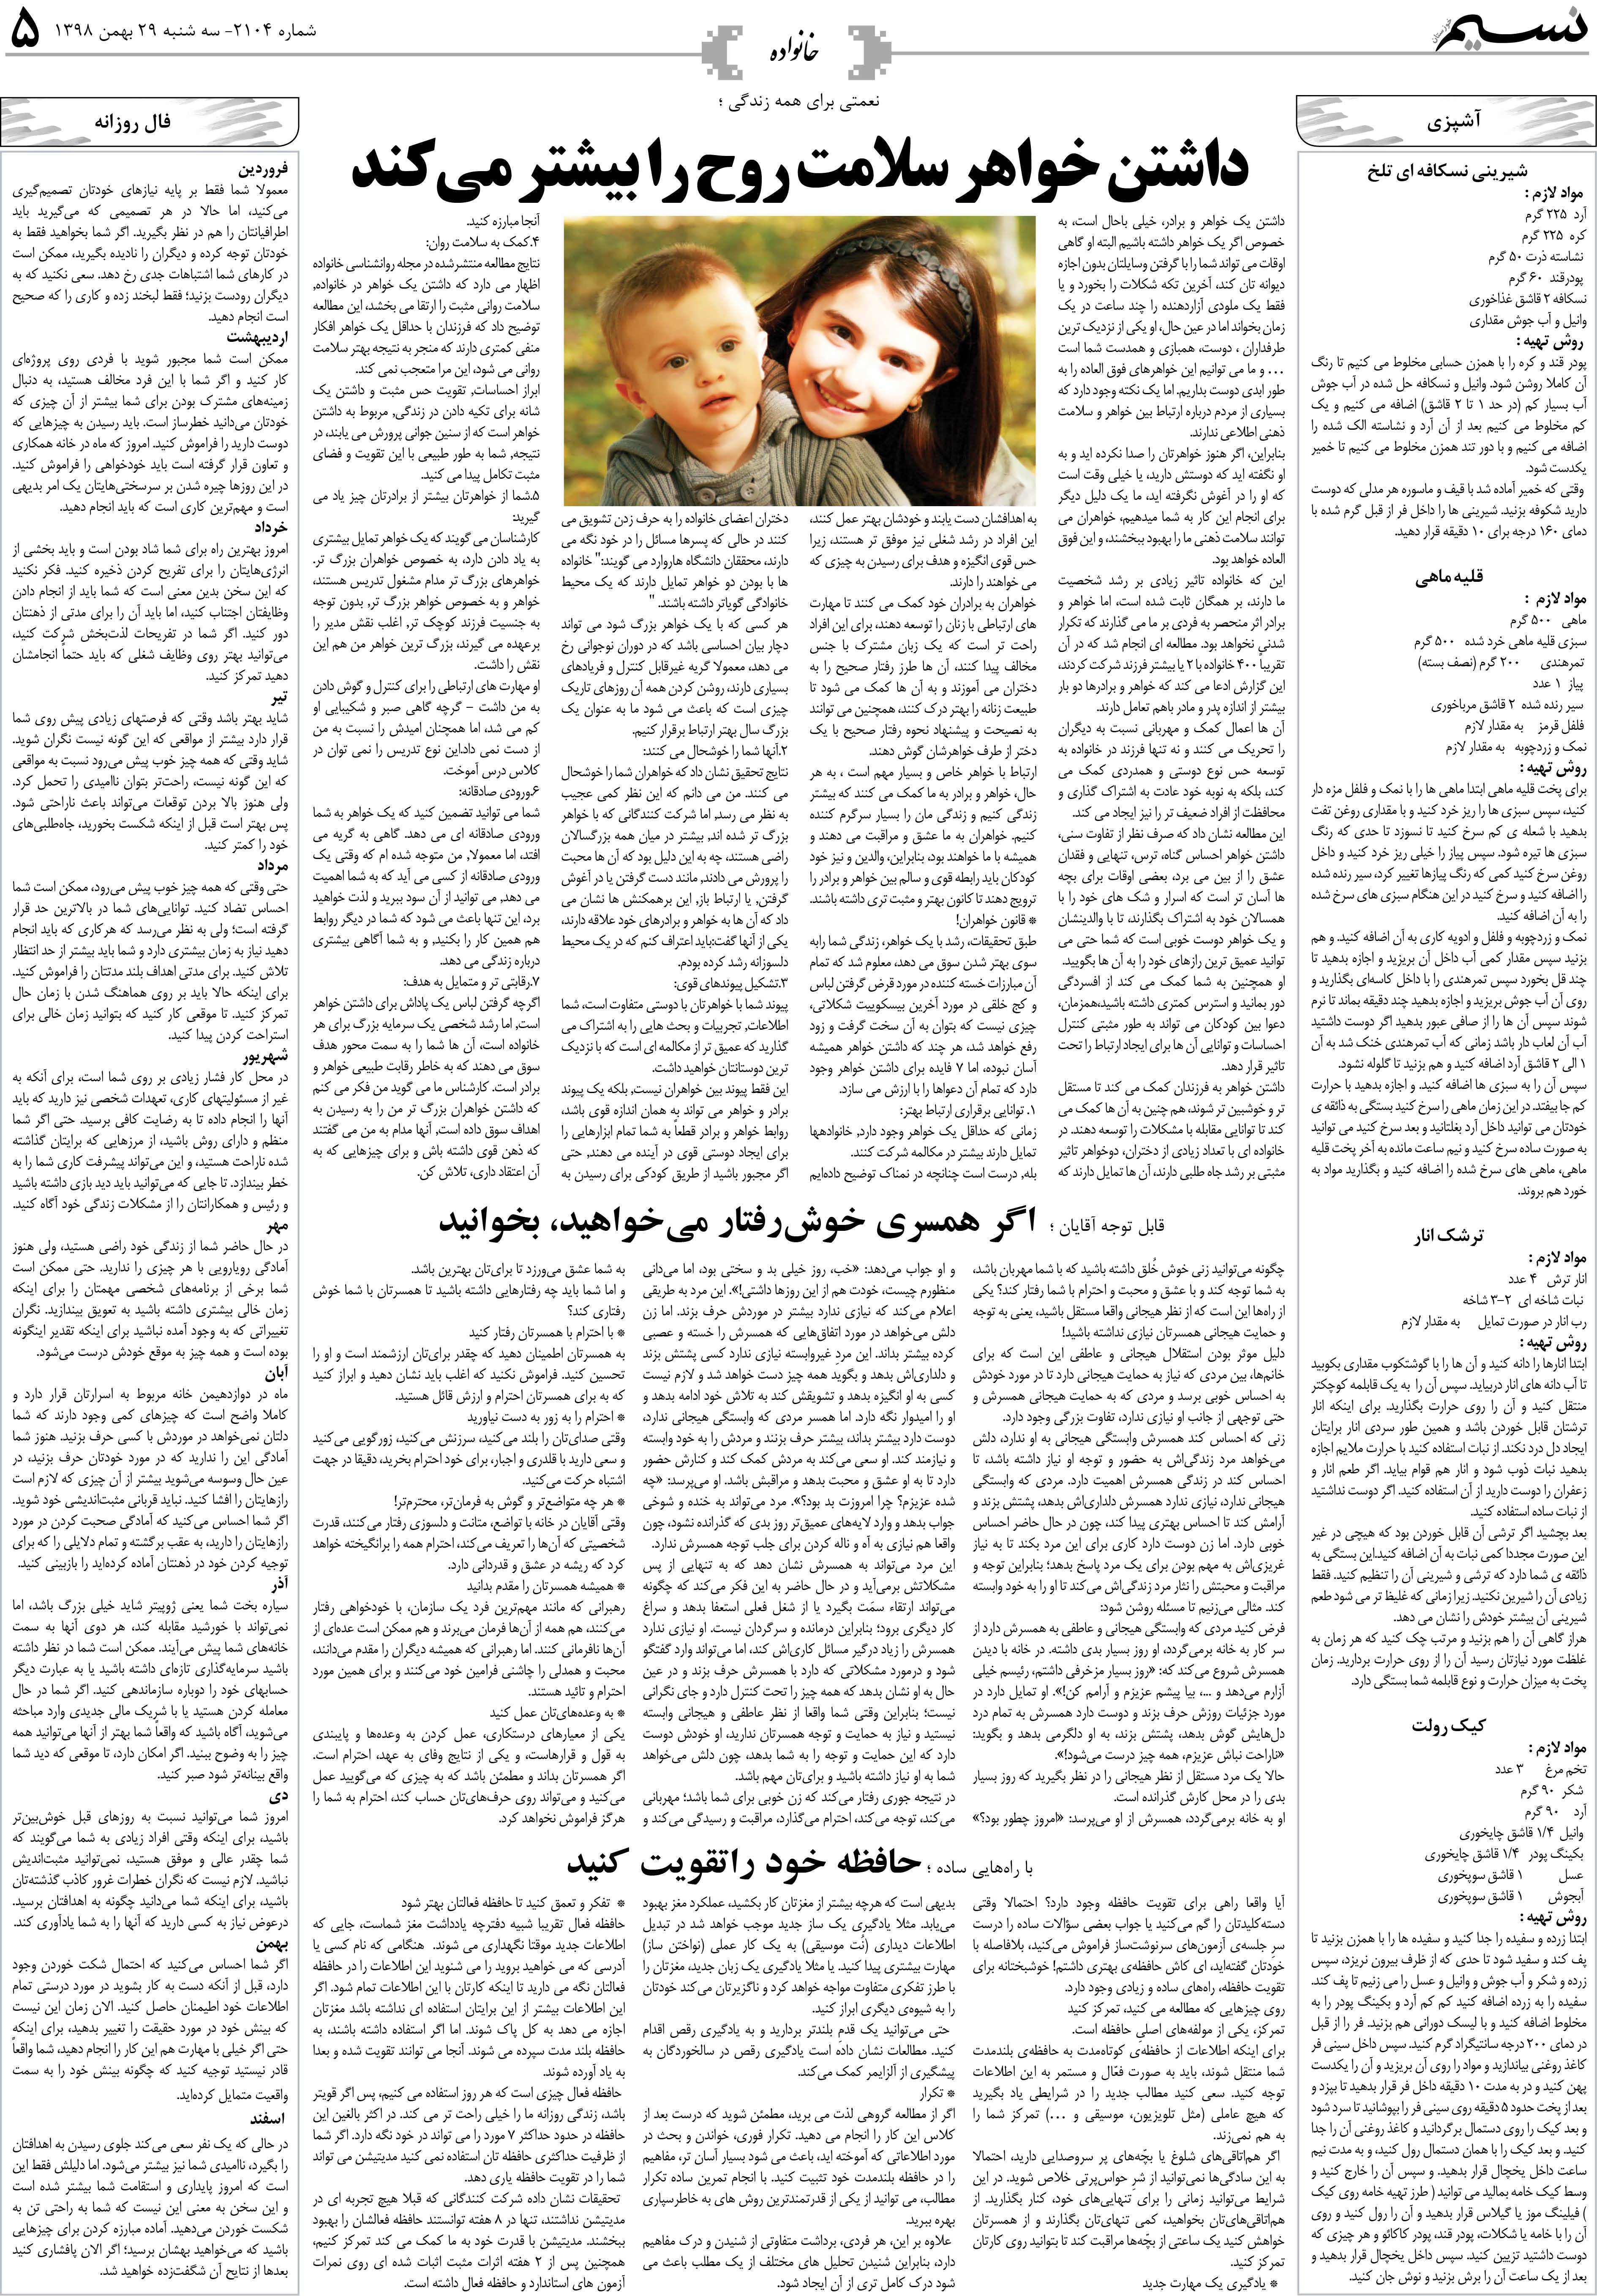 صفحه خانواده روزنامه نسیم شماره 2104